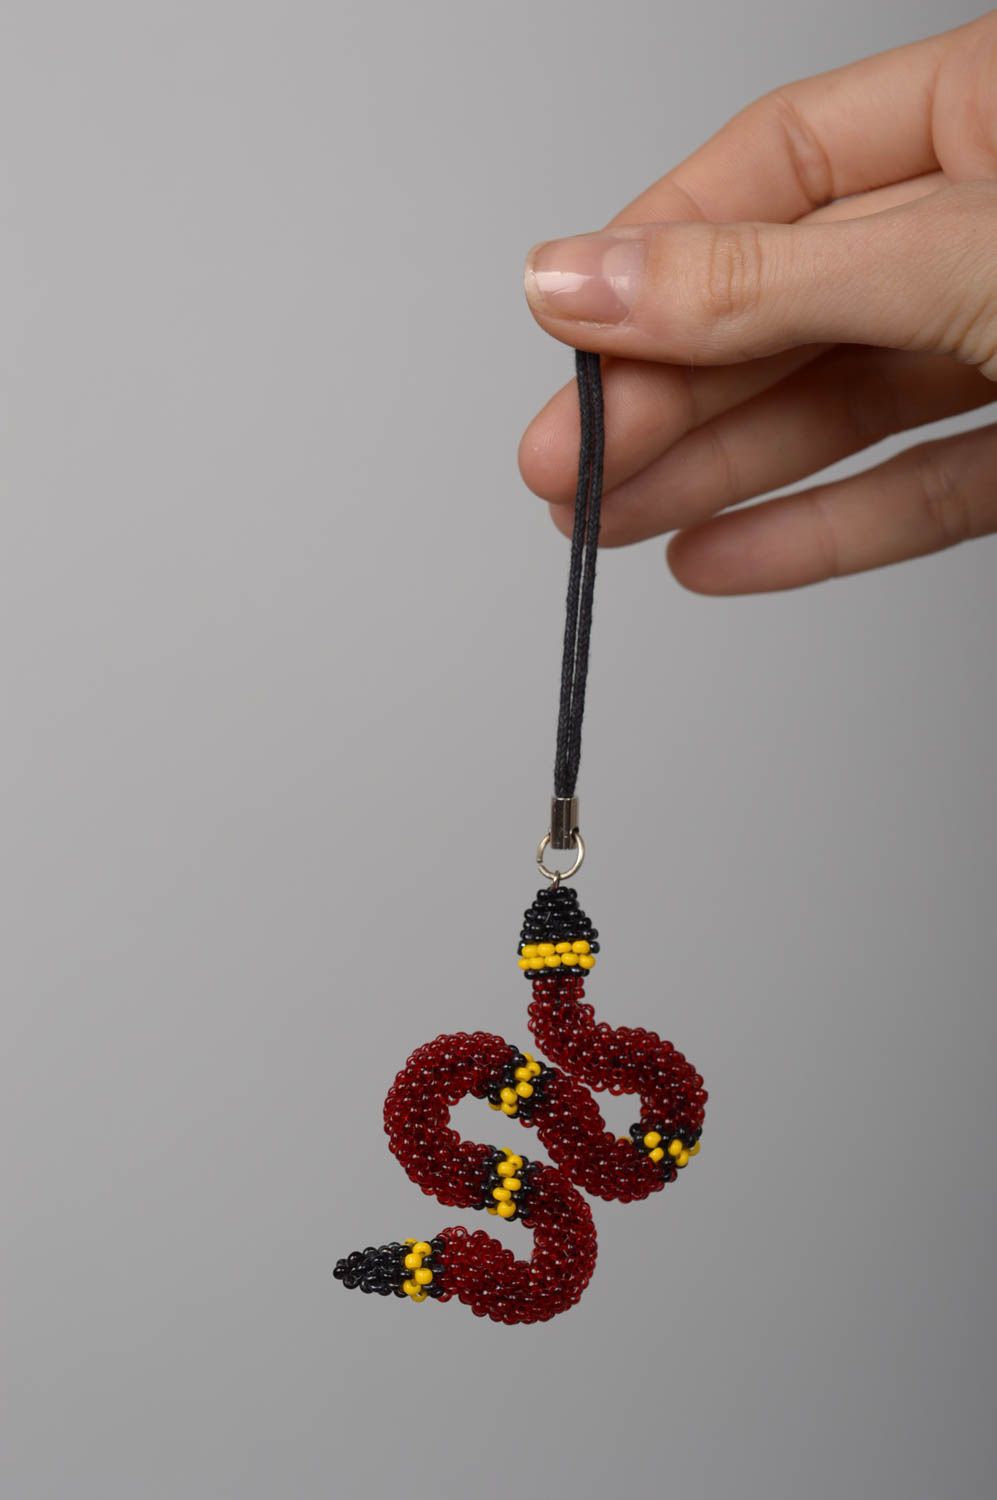 Unusual handmade beaded keychain cell phone charm beadwork ideas key fob photo 5